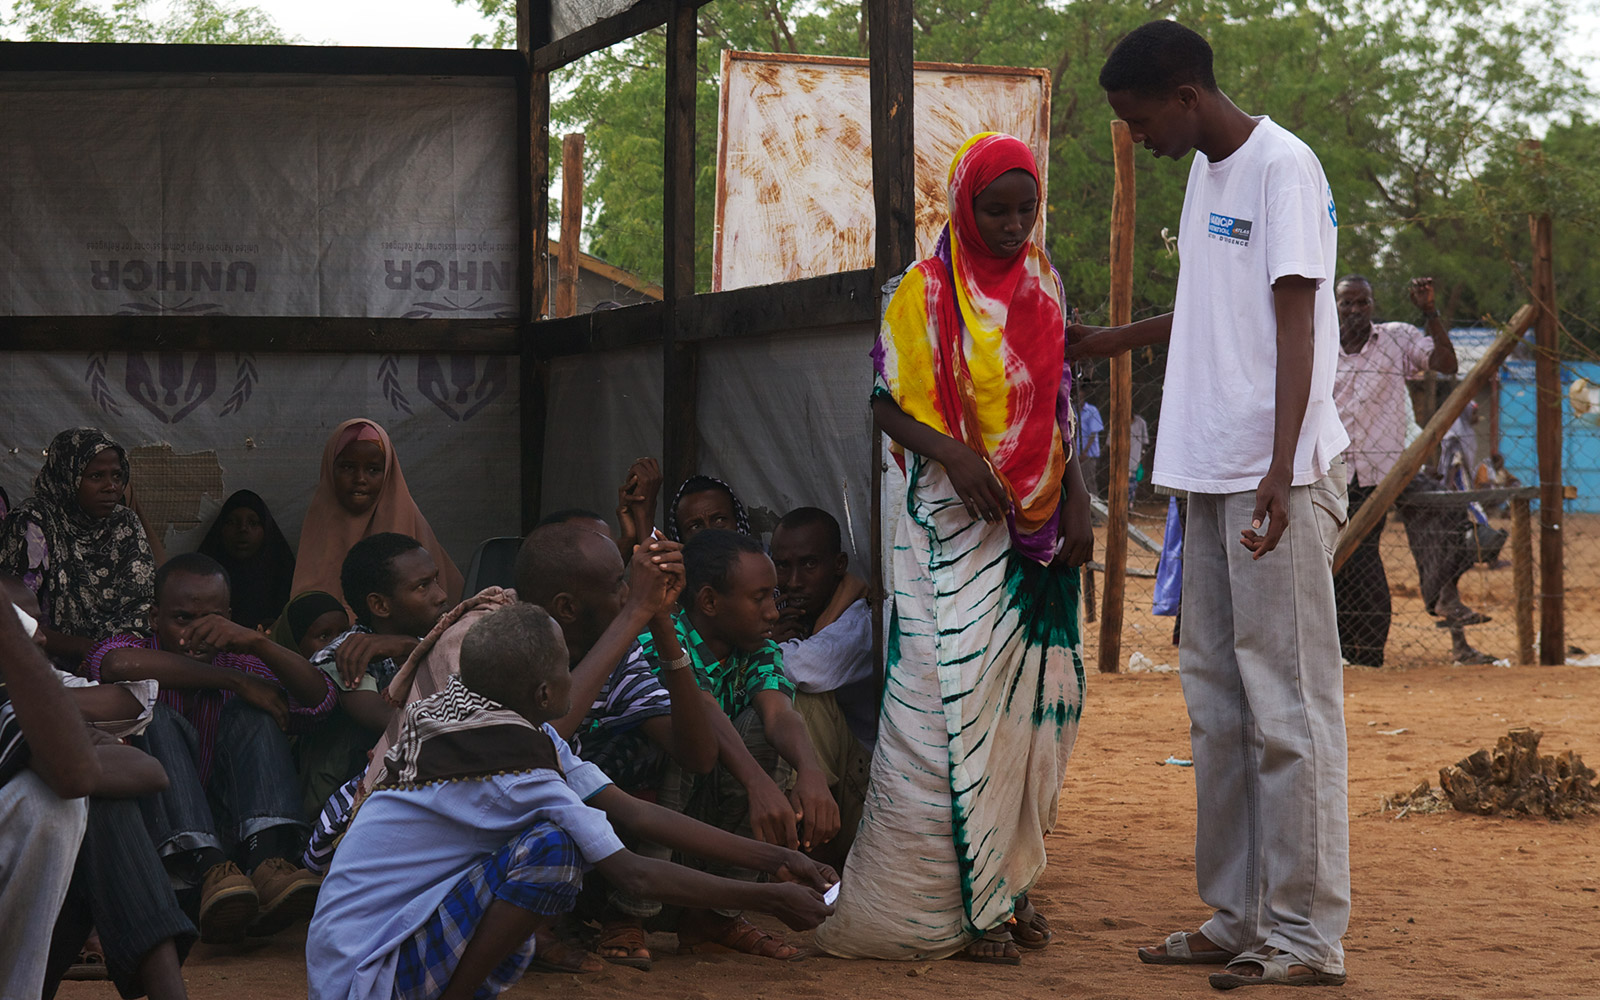 Kenya, Dadaab, jeune fille non accompagnée. Elle sera prise en charge par HI durant son enregistrement afin de s'assurer qu'elle ait accès à l'aide et qu'elle ne soit pas en situation d'insécurité.